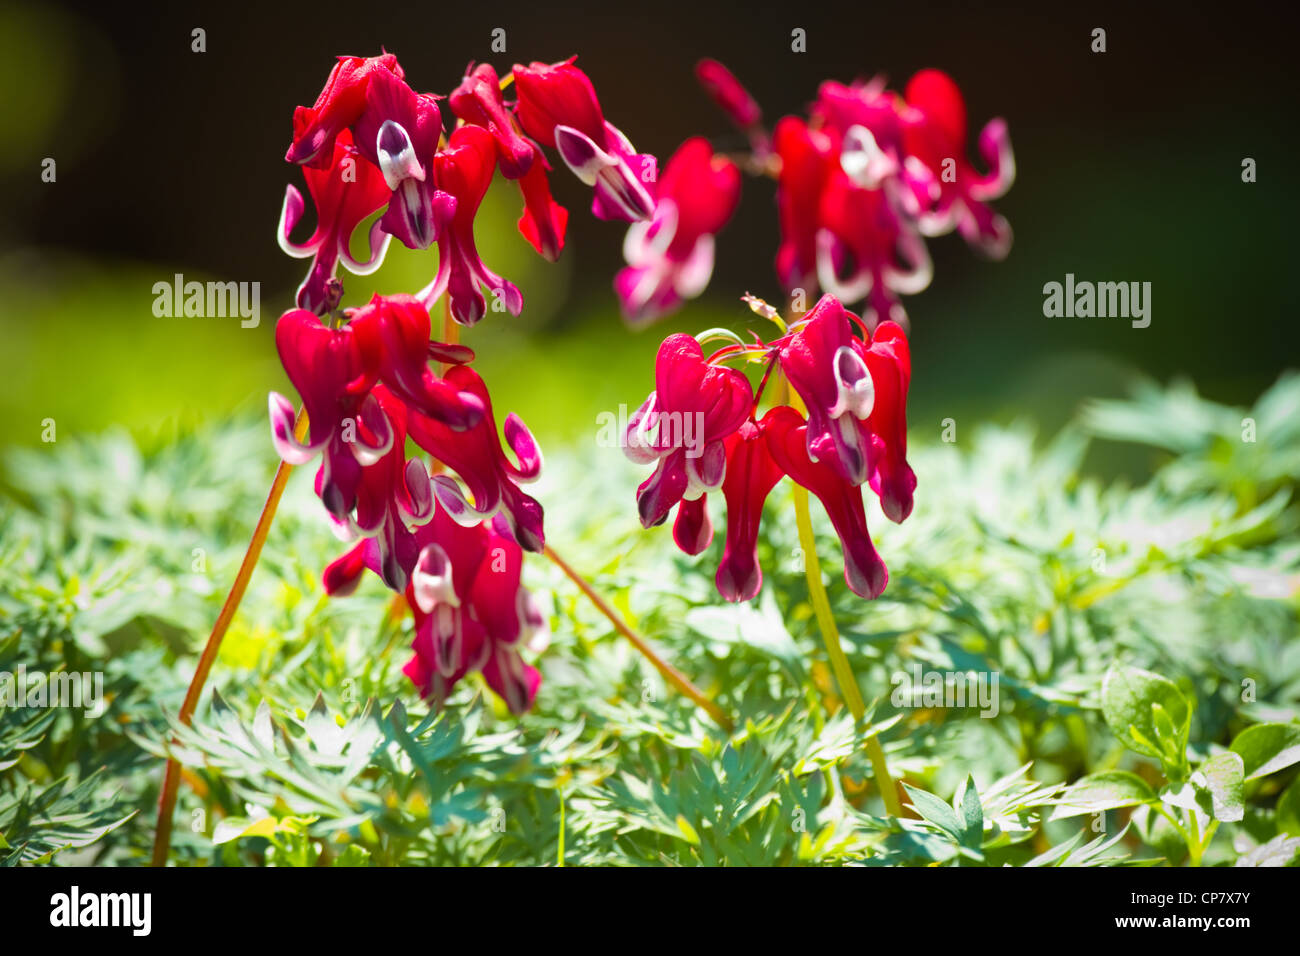 Westlichen Herzblume oder Dicentra Formosa var brennende Herz Blumen in rot und weiß blühen im Frühling - horizontal Stockfoto